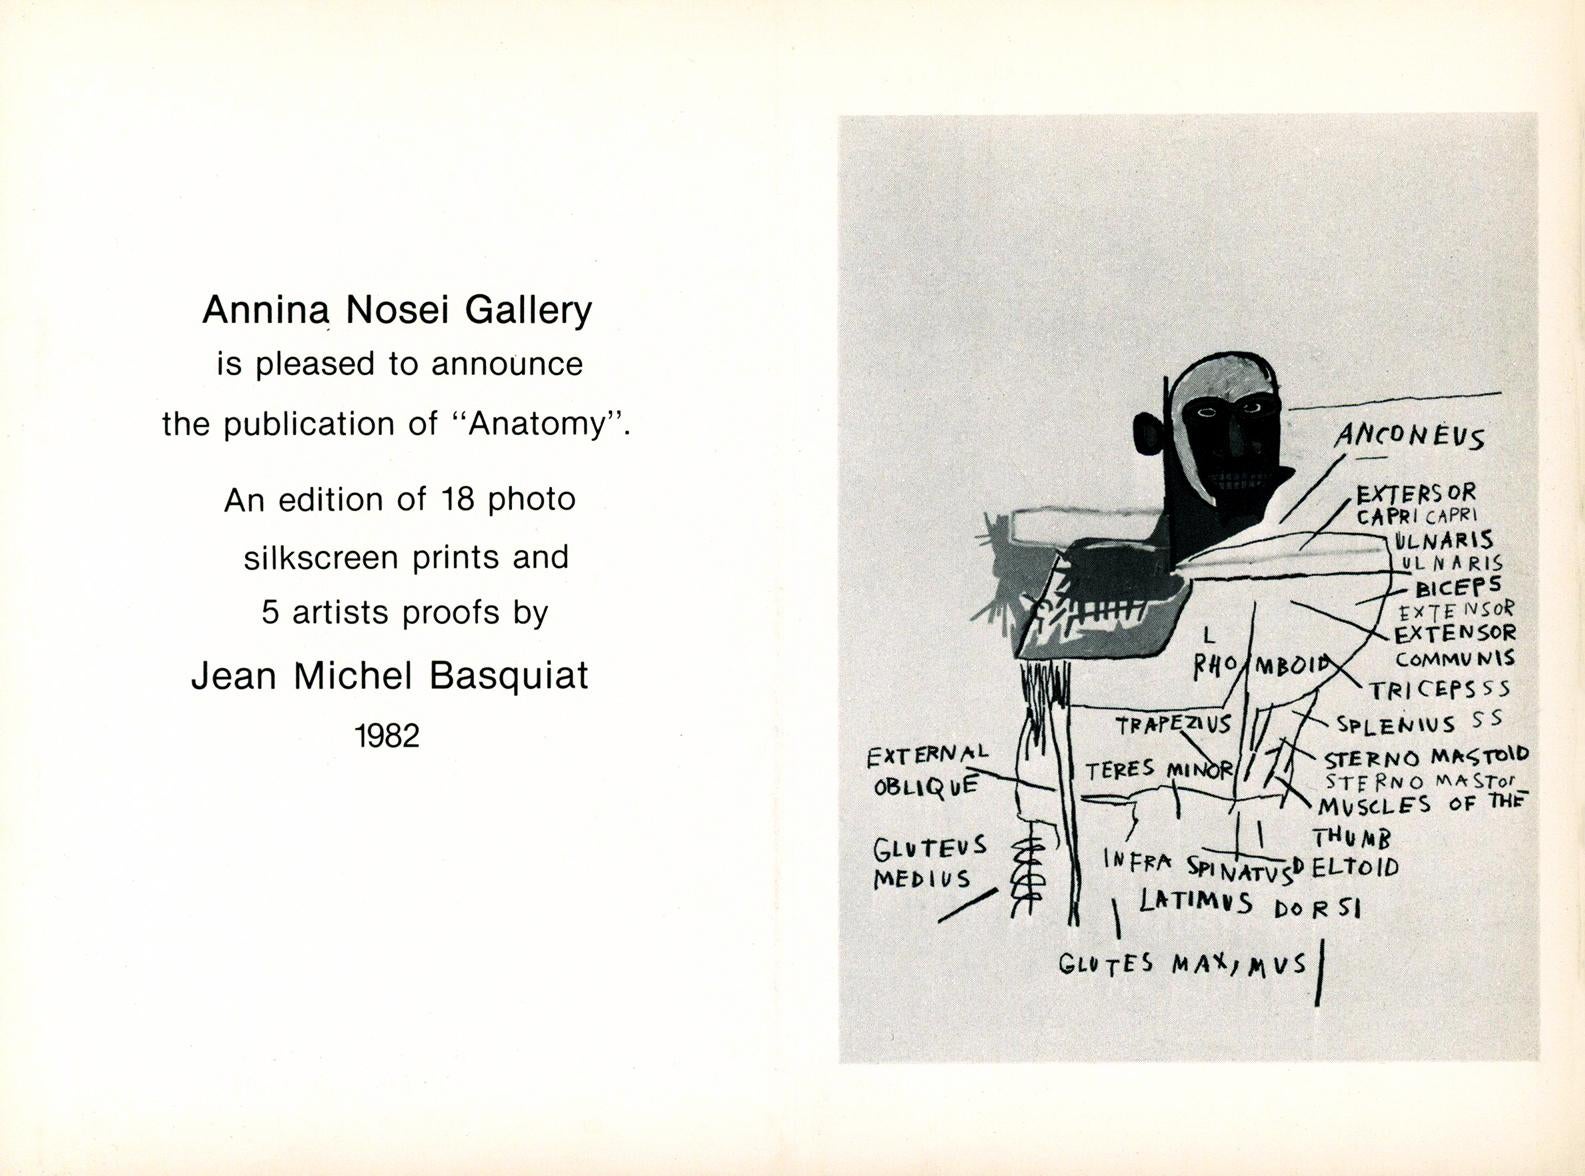 Basquiat Annina Nosei Gallery 1982 (Basquiat anatomy announcement) - Print by Jean-Michel Basquiat